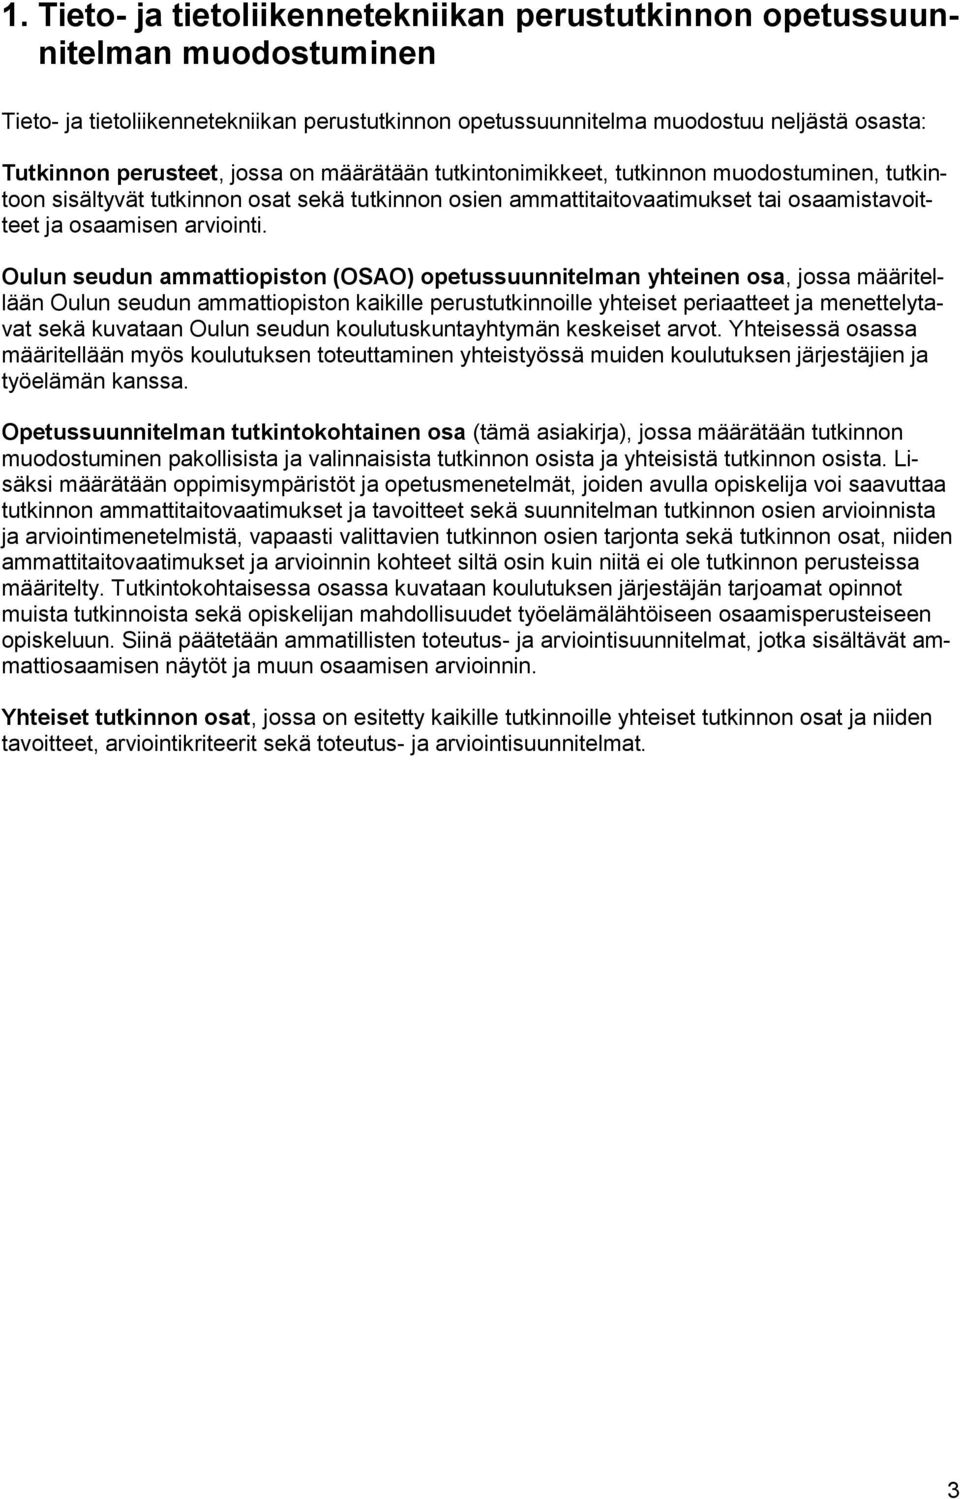 Oulun seudun ammattiopiston (OSAO) opetussuunnitelman yhteinen osa, jossa määritellään Oulun seudun ammattiopiston kaikille perustutkinnoille yhteiset periaatteet ja menettelytavat sekä kuvataan